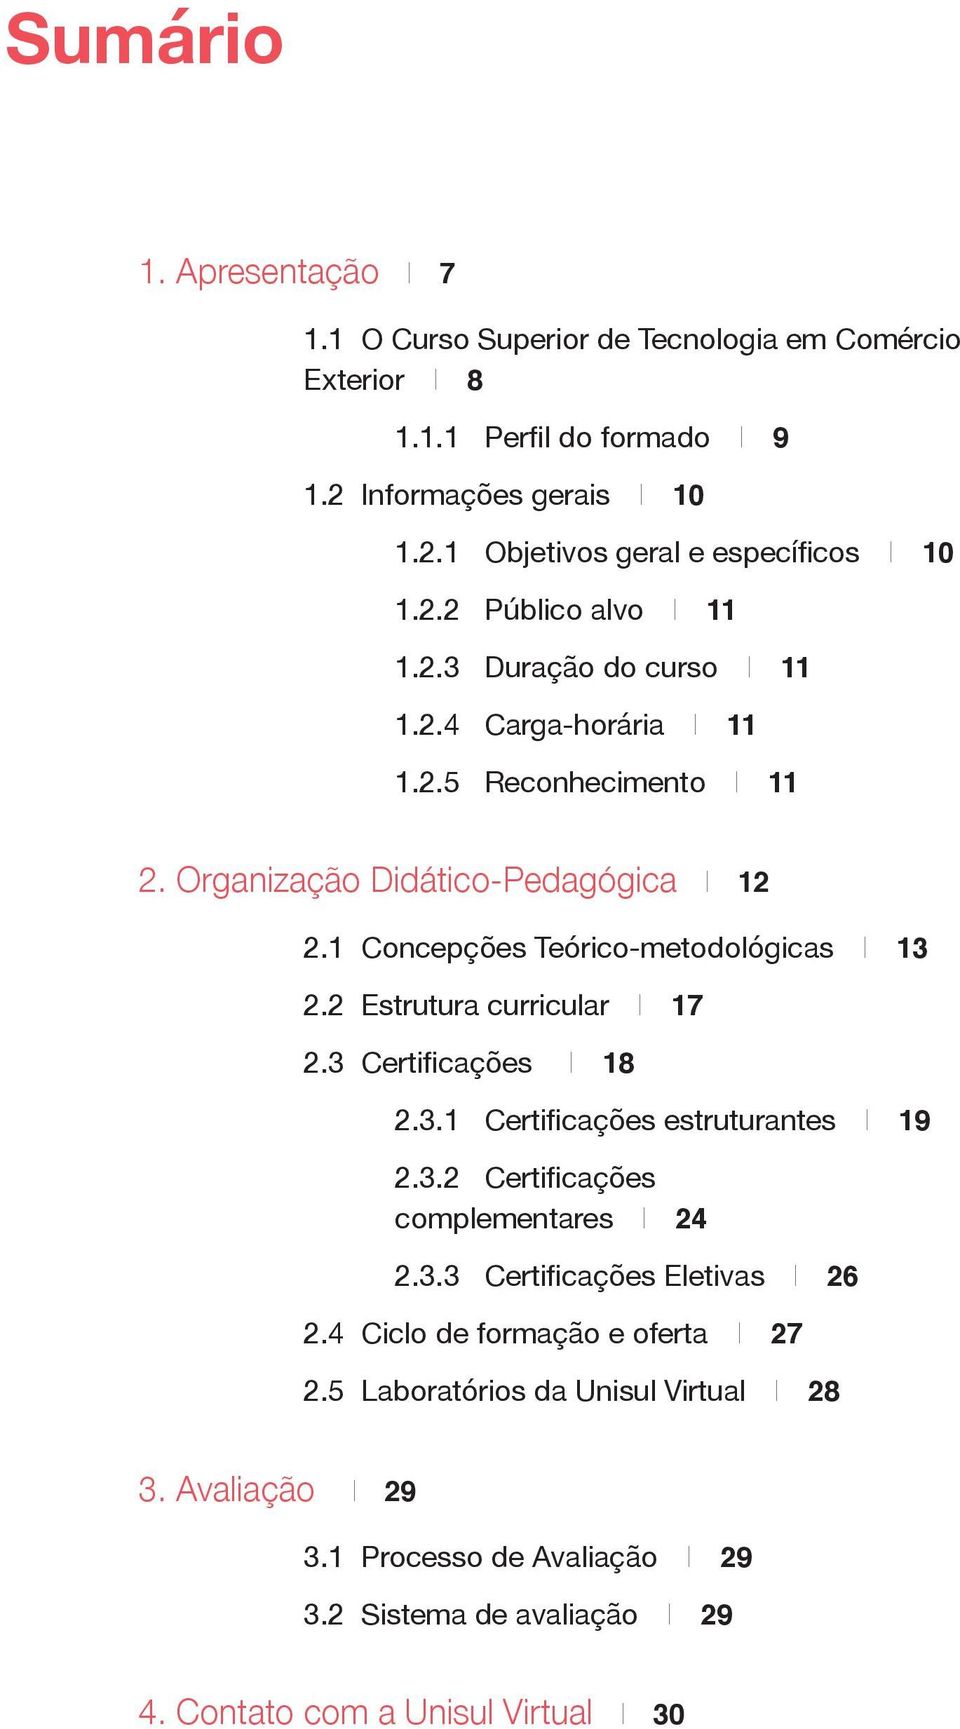 1 Concepções Teórico-metodológicas I 13 2.2 Estrutura curricular I 17 2.3 Certificações I 18 2.3.1 Certificações estruturantes I 19 2.3.2 Certificações complementares I 24 2.3.3 Certificações Eletivas I 26 2.